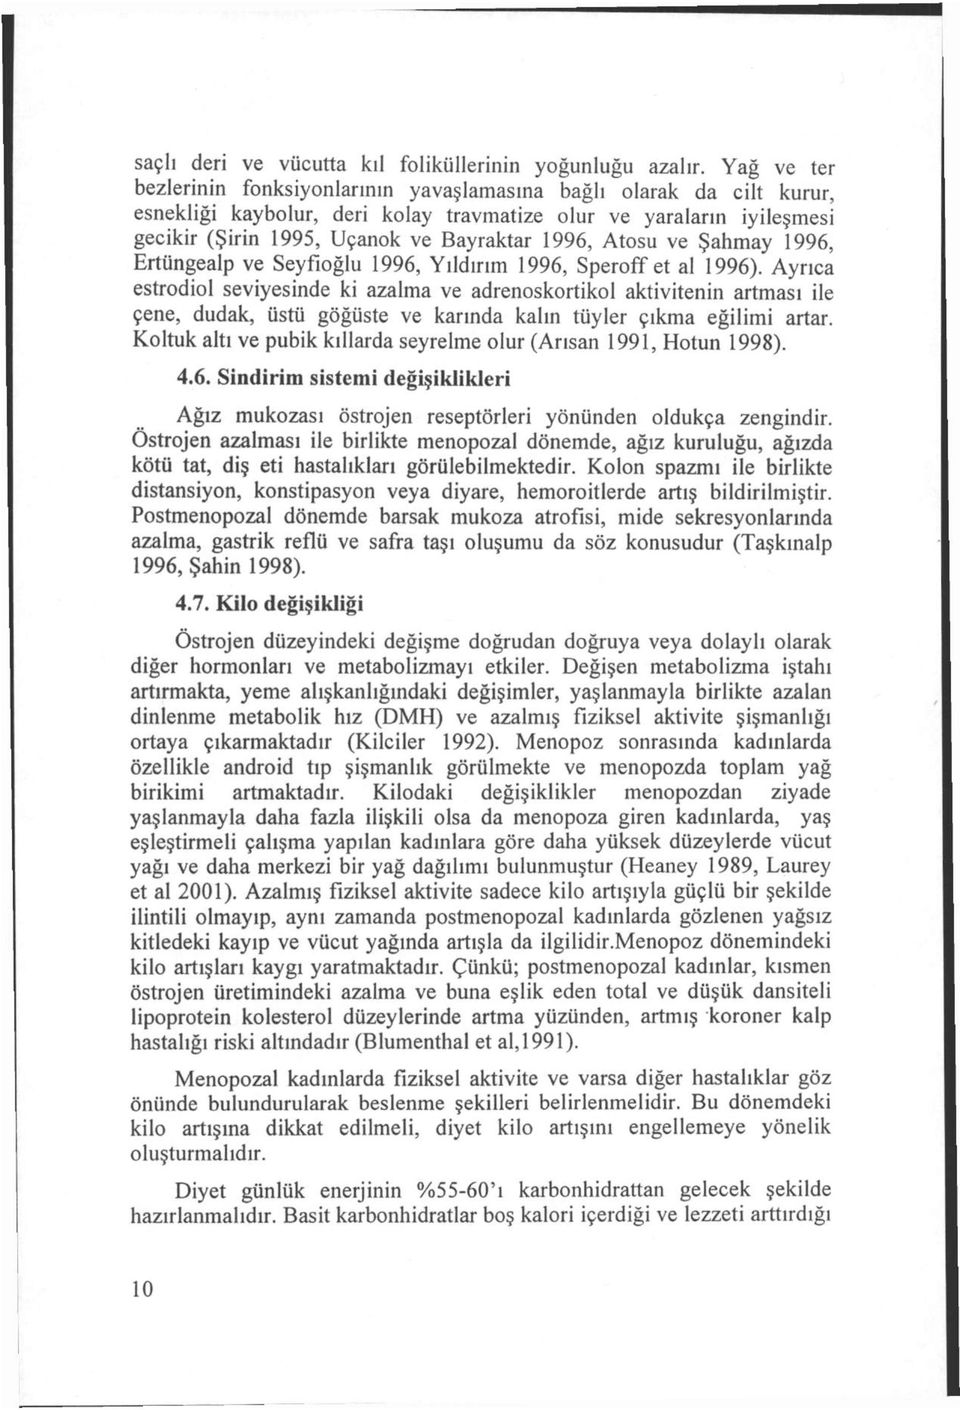 Atosu ve Şahmay 1996, Ertüngealp ve Seyfioğlu 1996, Yıldırım 1996, Speroff et al 1996).